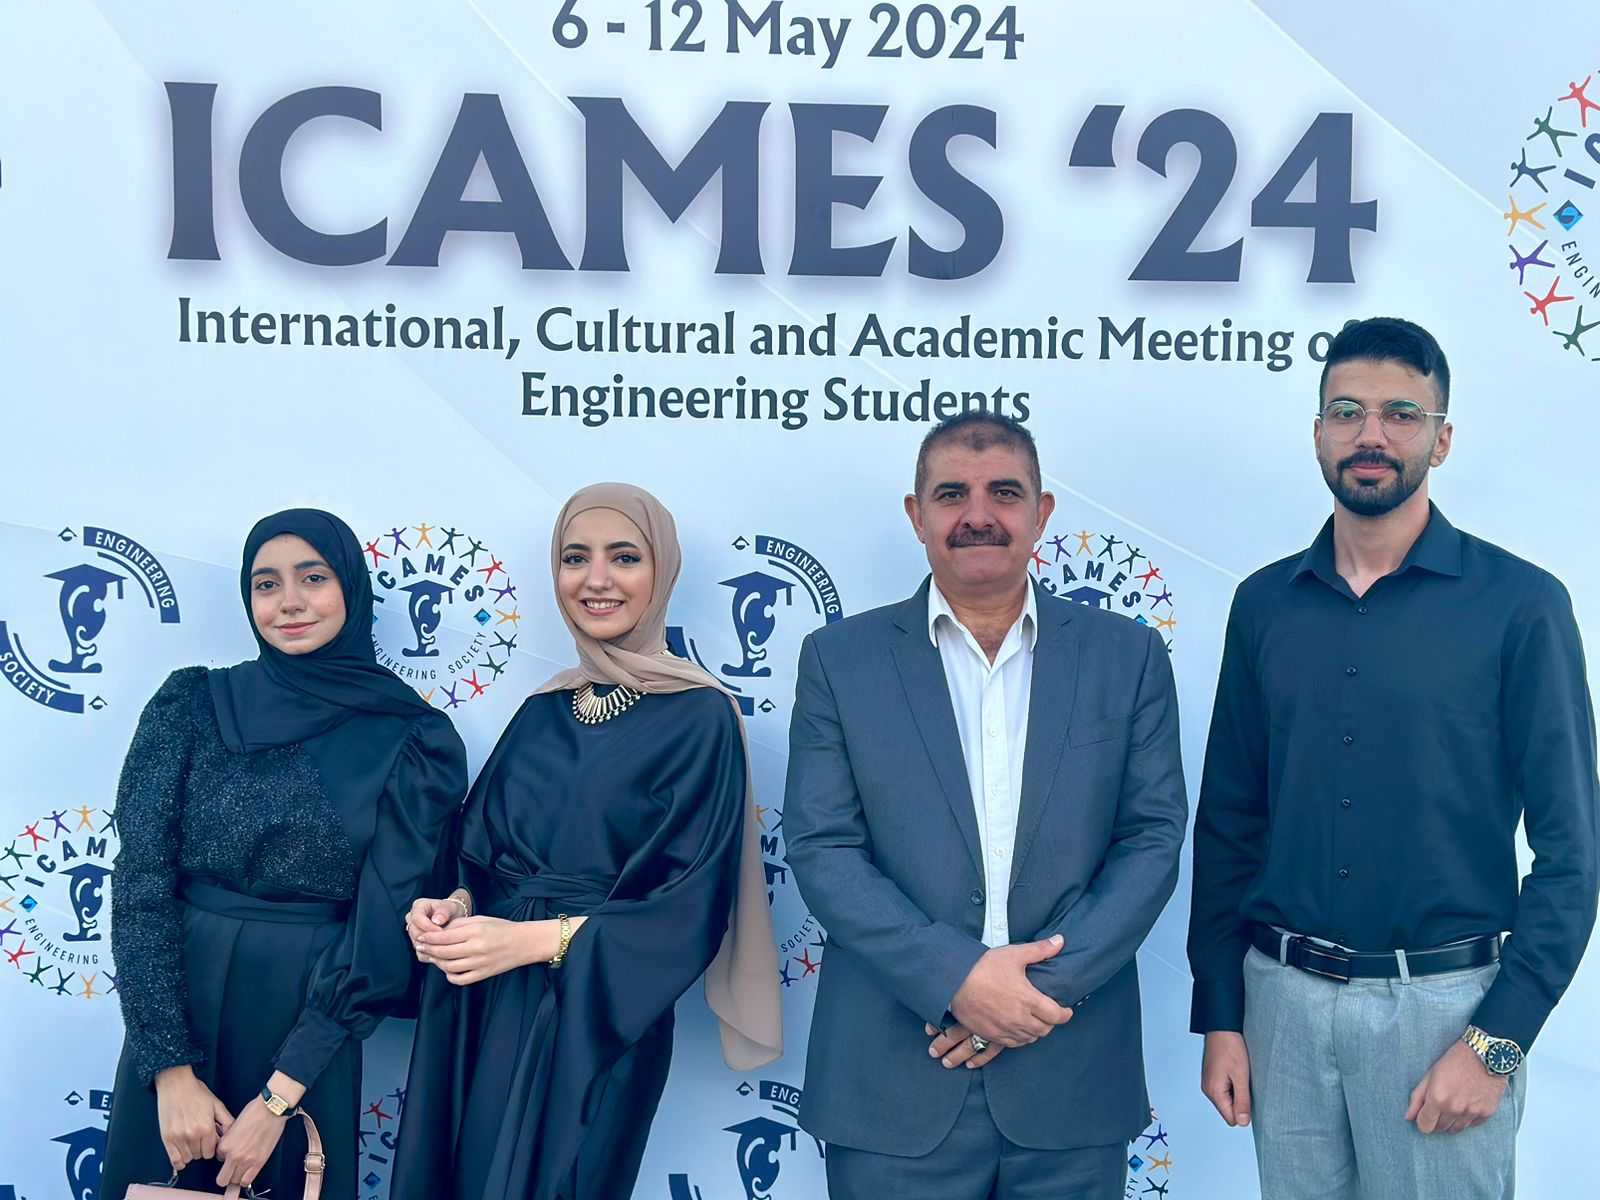 فريق طلابي من حجاوي اليرموك يفوز بجائزة دولية في مجال الهندسة والتكنولوجيا